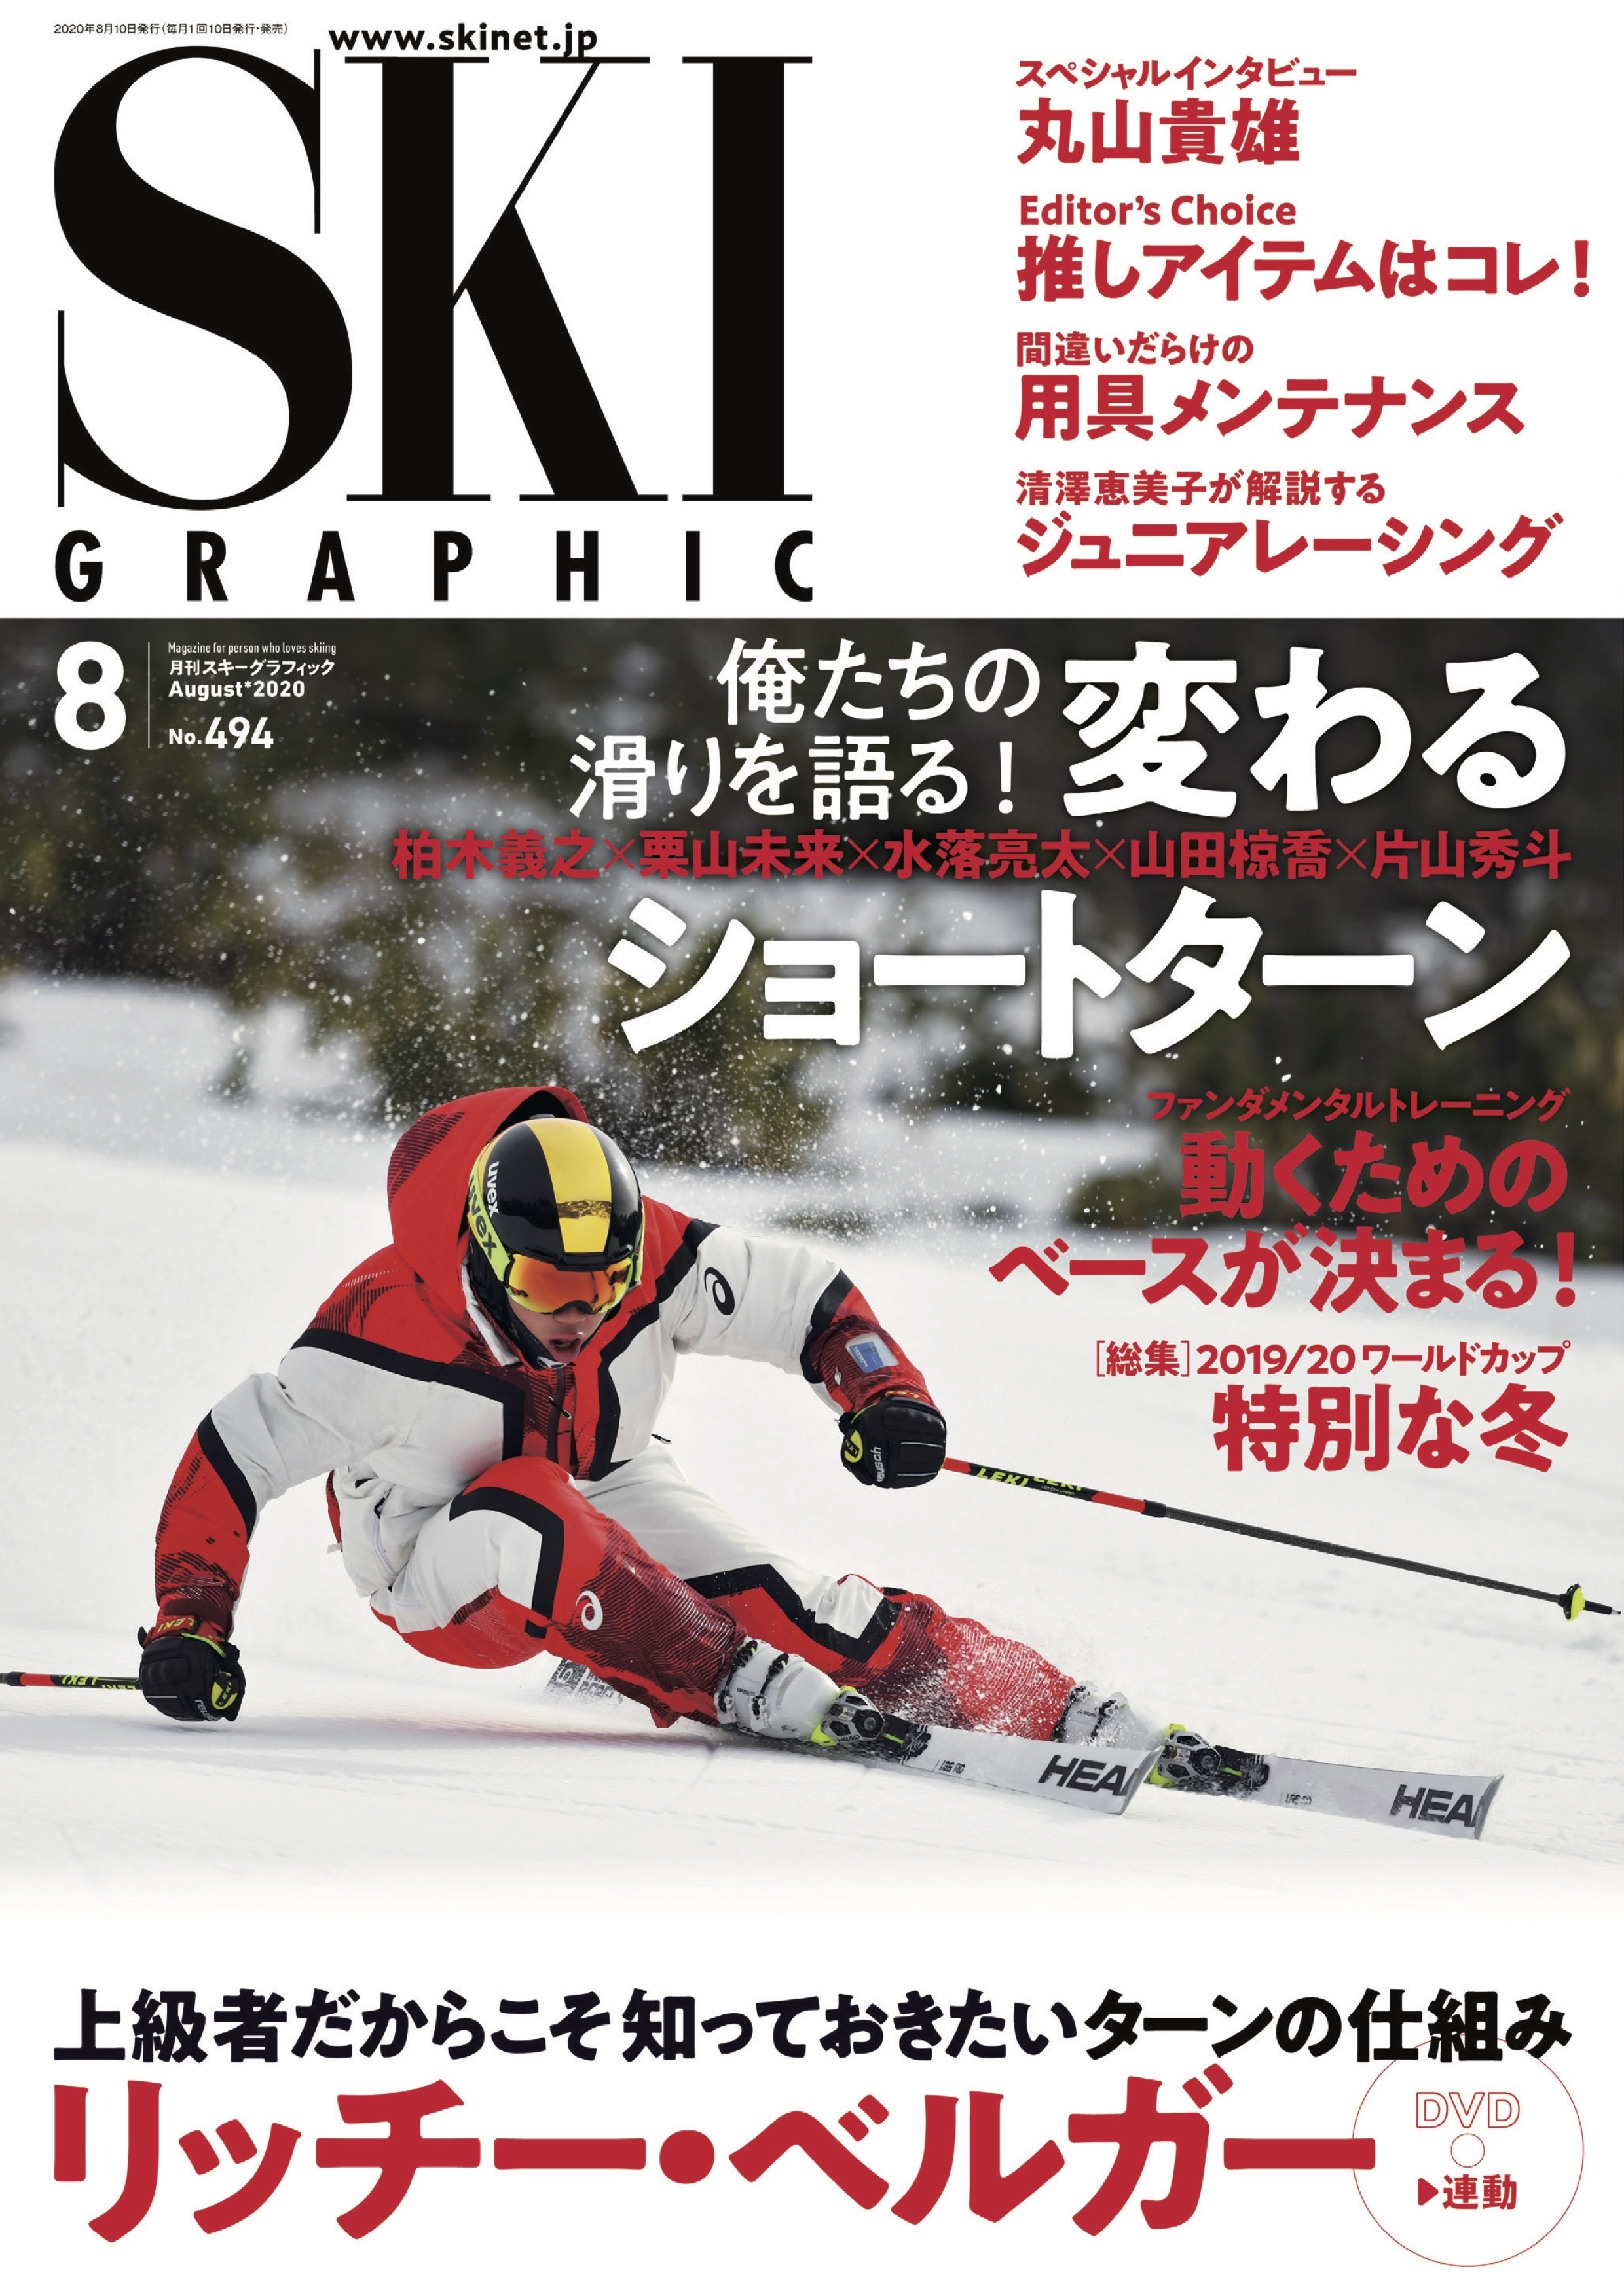 スキーグラフィックNo.494 - スキーグラフィック編集部 - 漫画・ラノベ